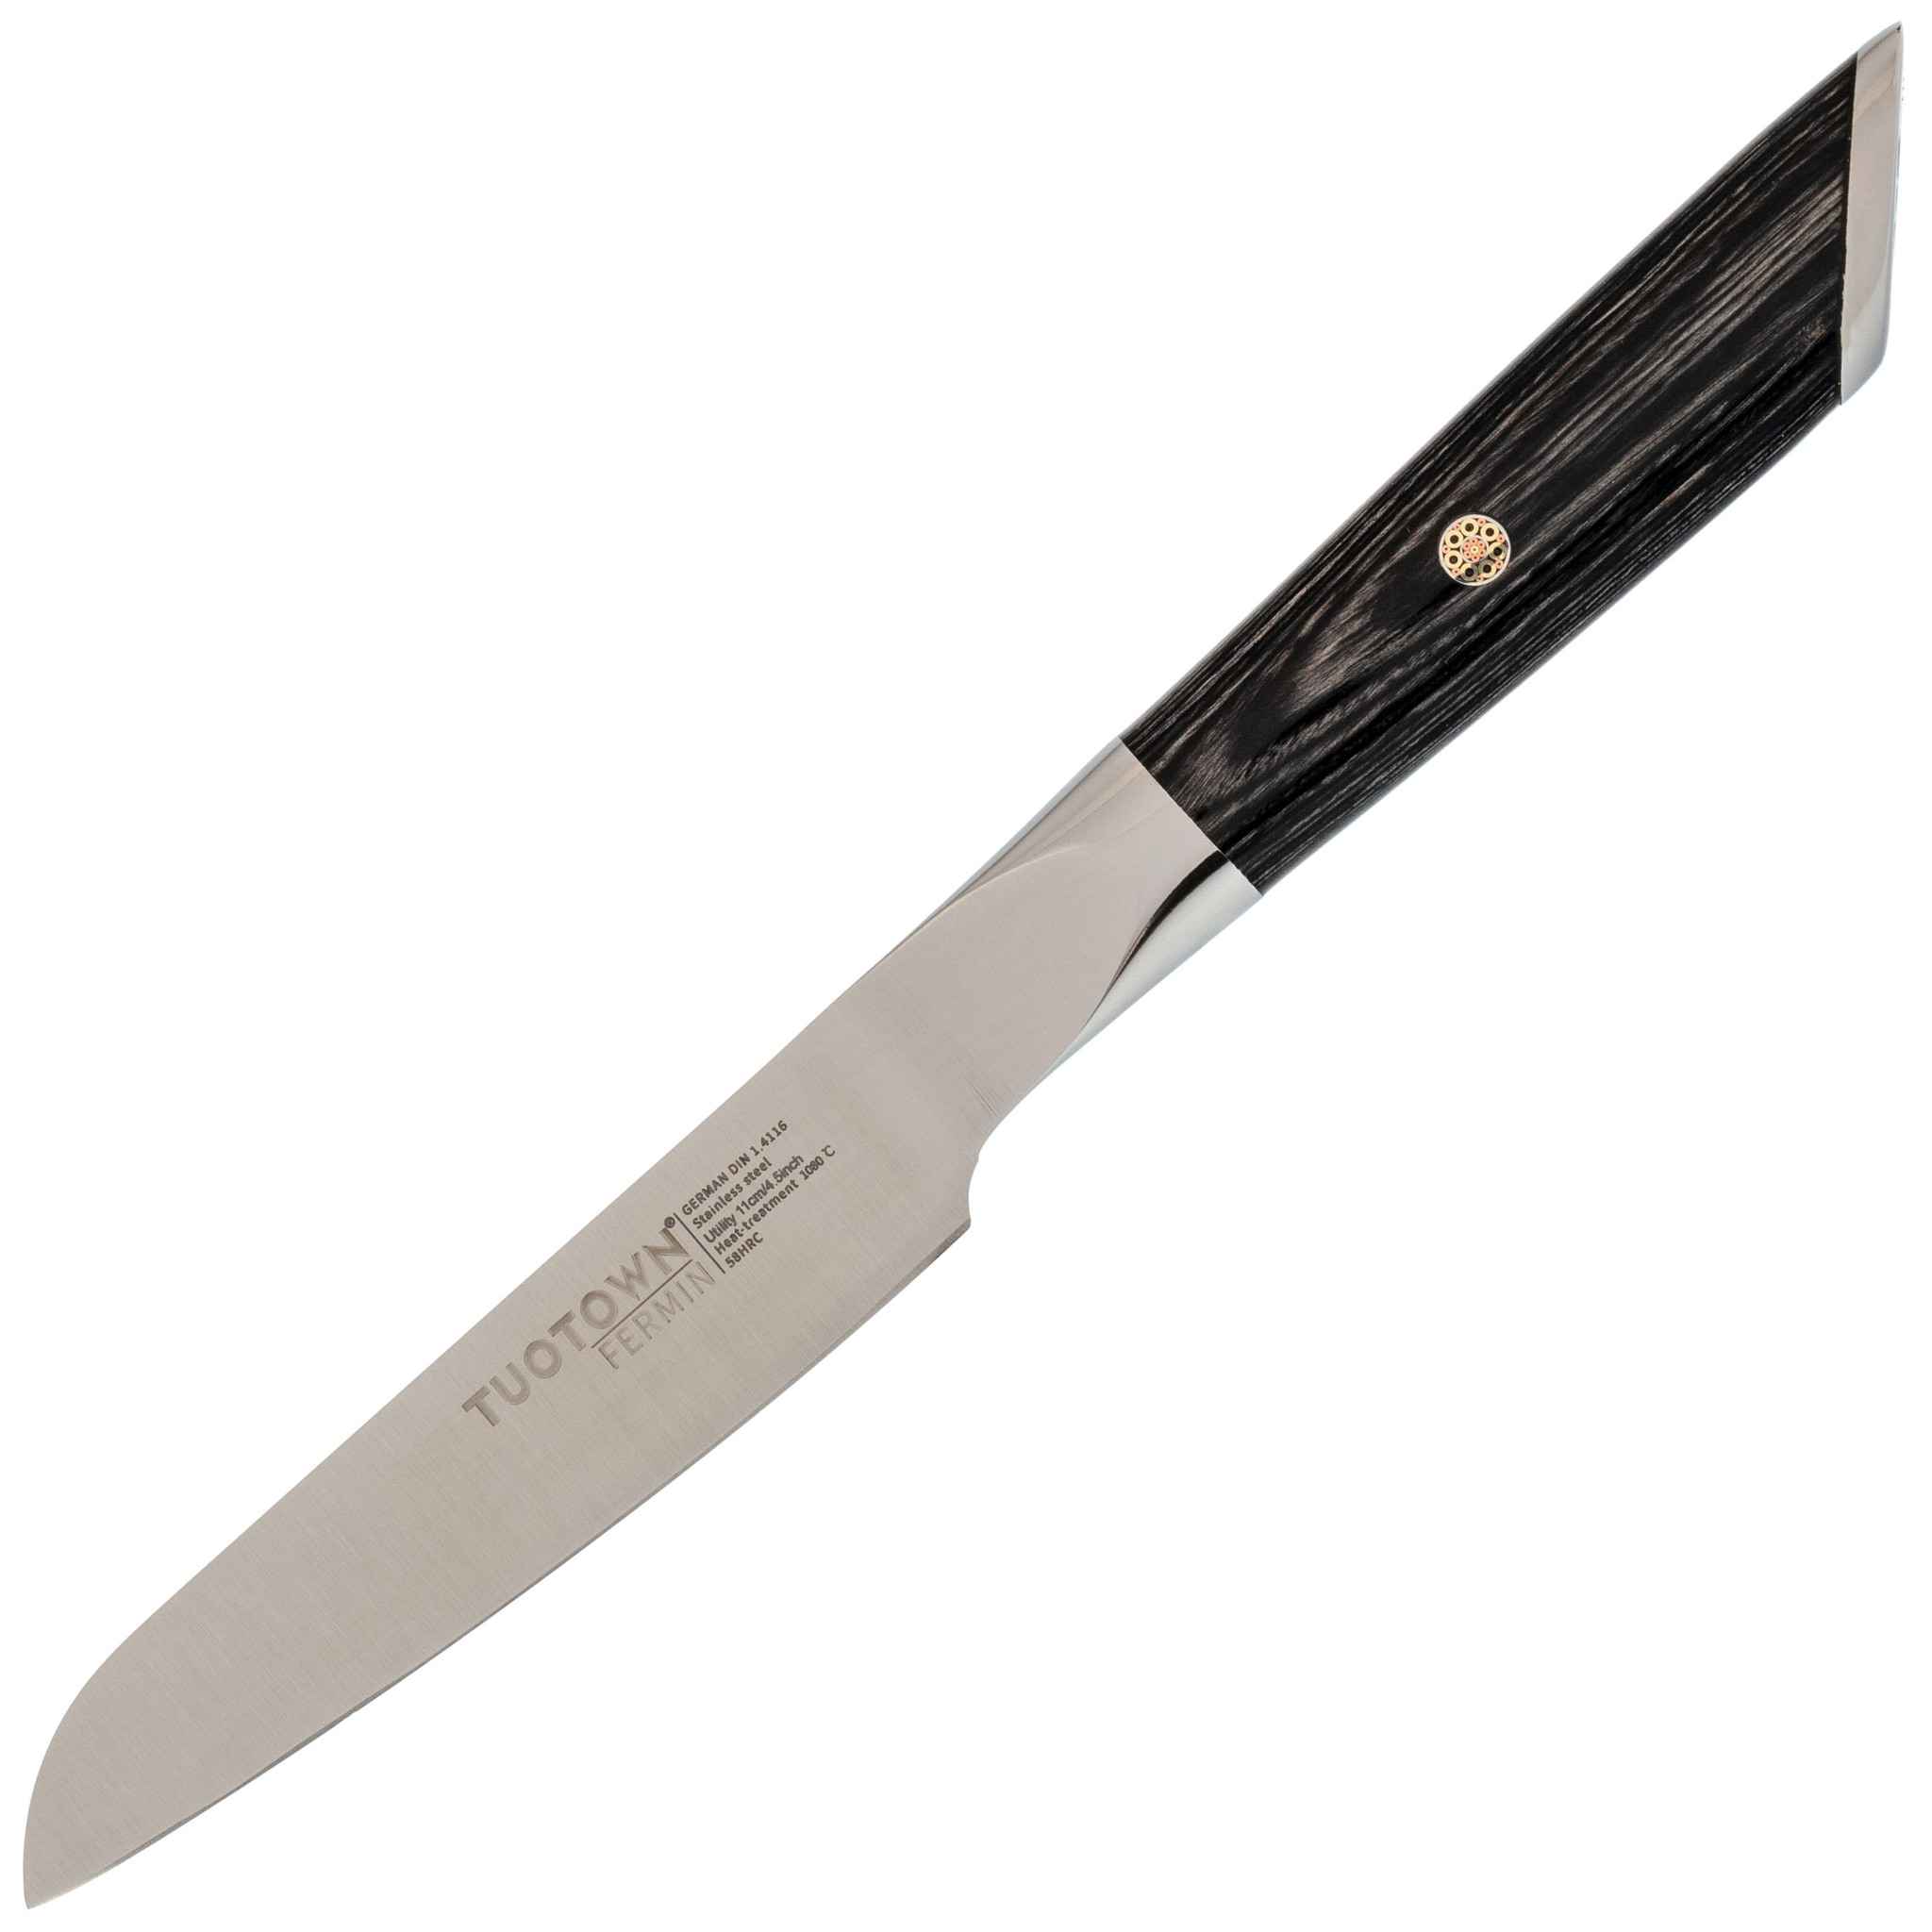 Кухонный нож универсальный, Tuotown серия Fermin, сталь 1.4116, рукоять дерево, Кухонные ножи, Универсальные